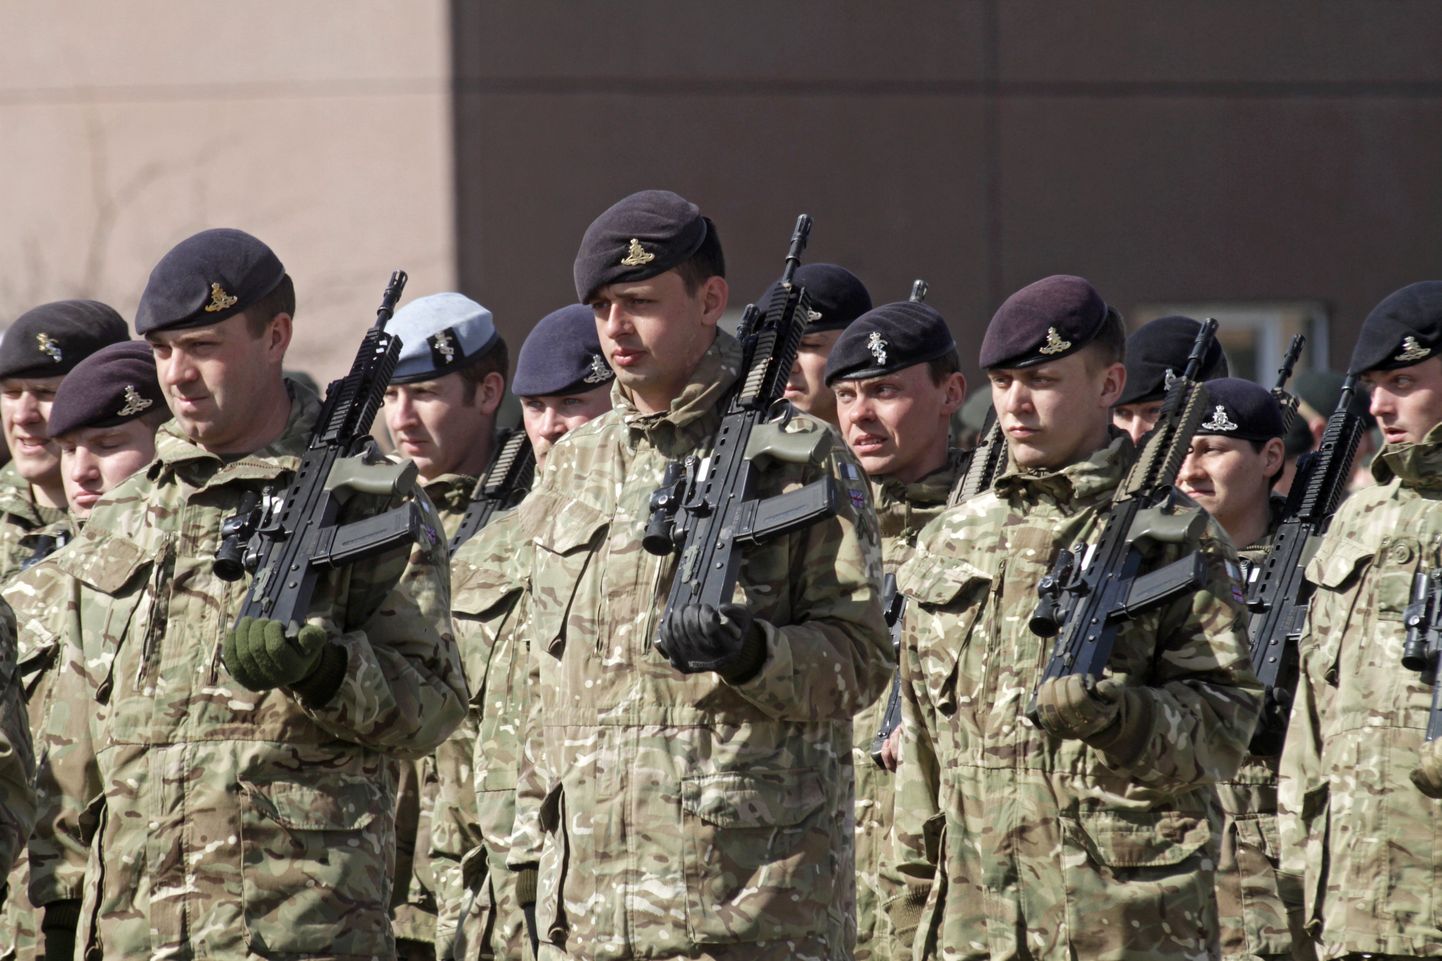 Briti sõdurid 2017 Eestis Tapal